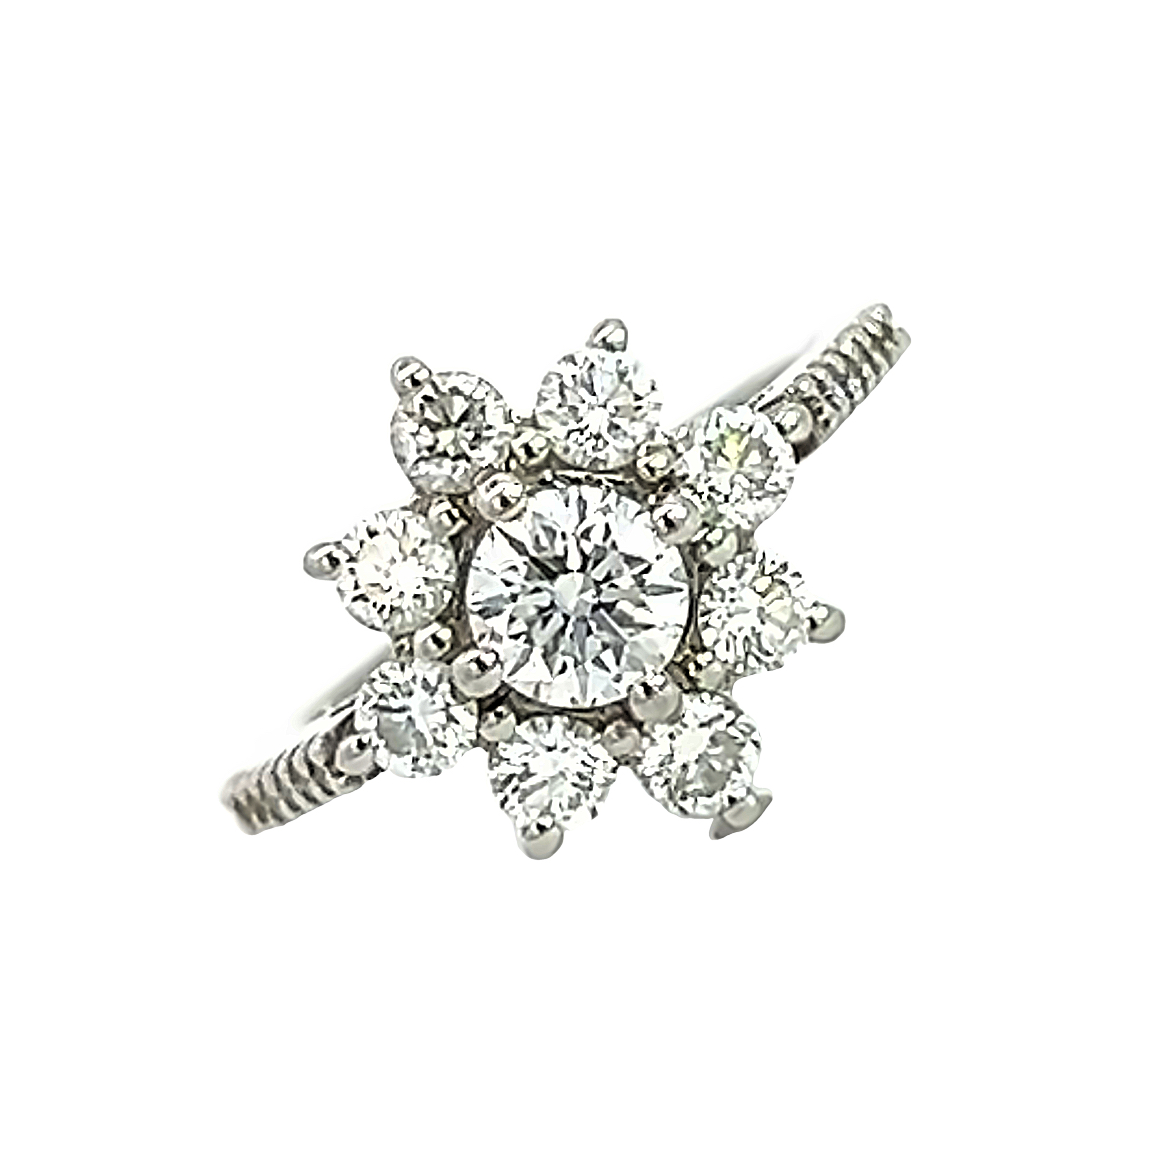 Stunning Diamond Flower Cluster Ring